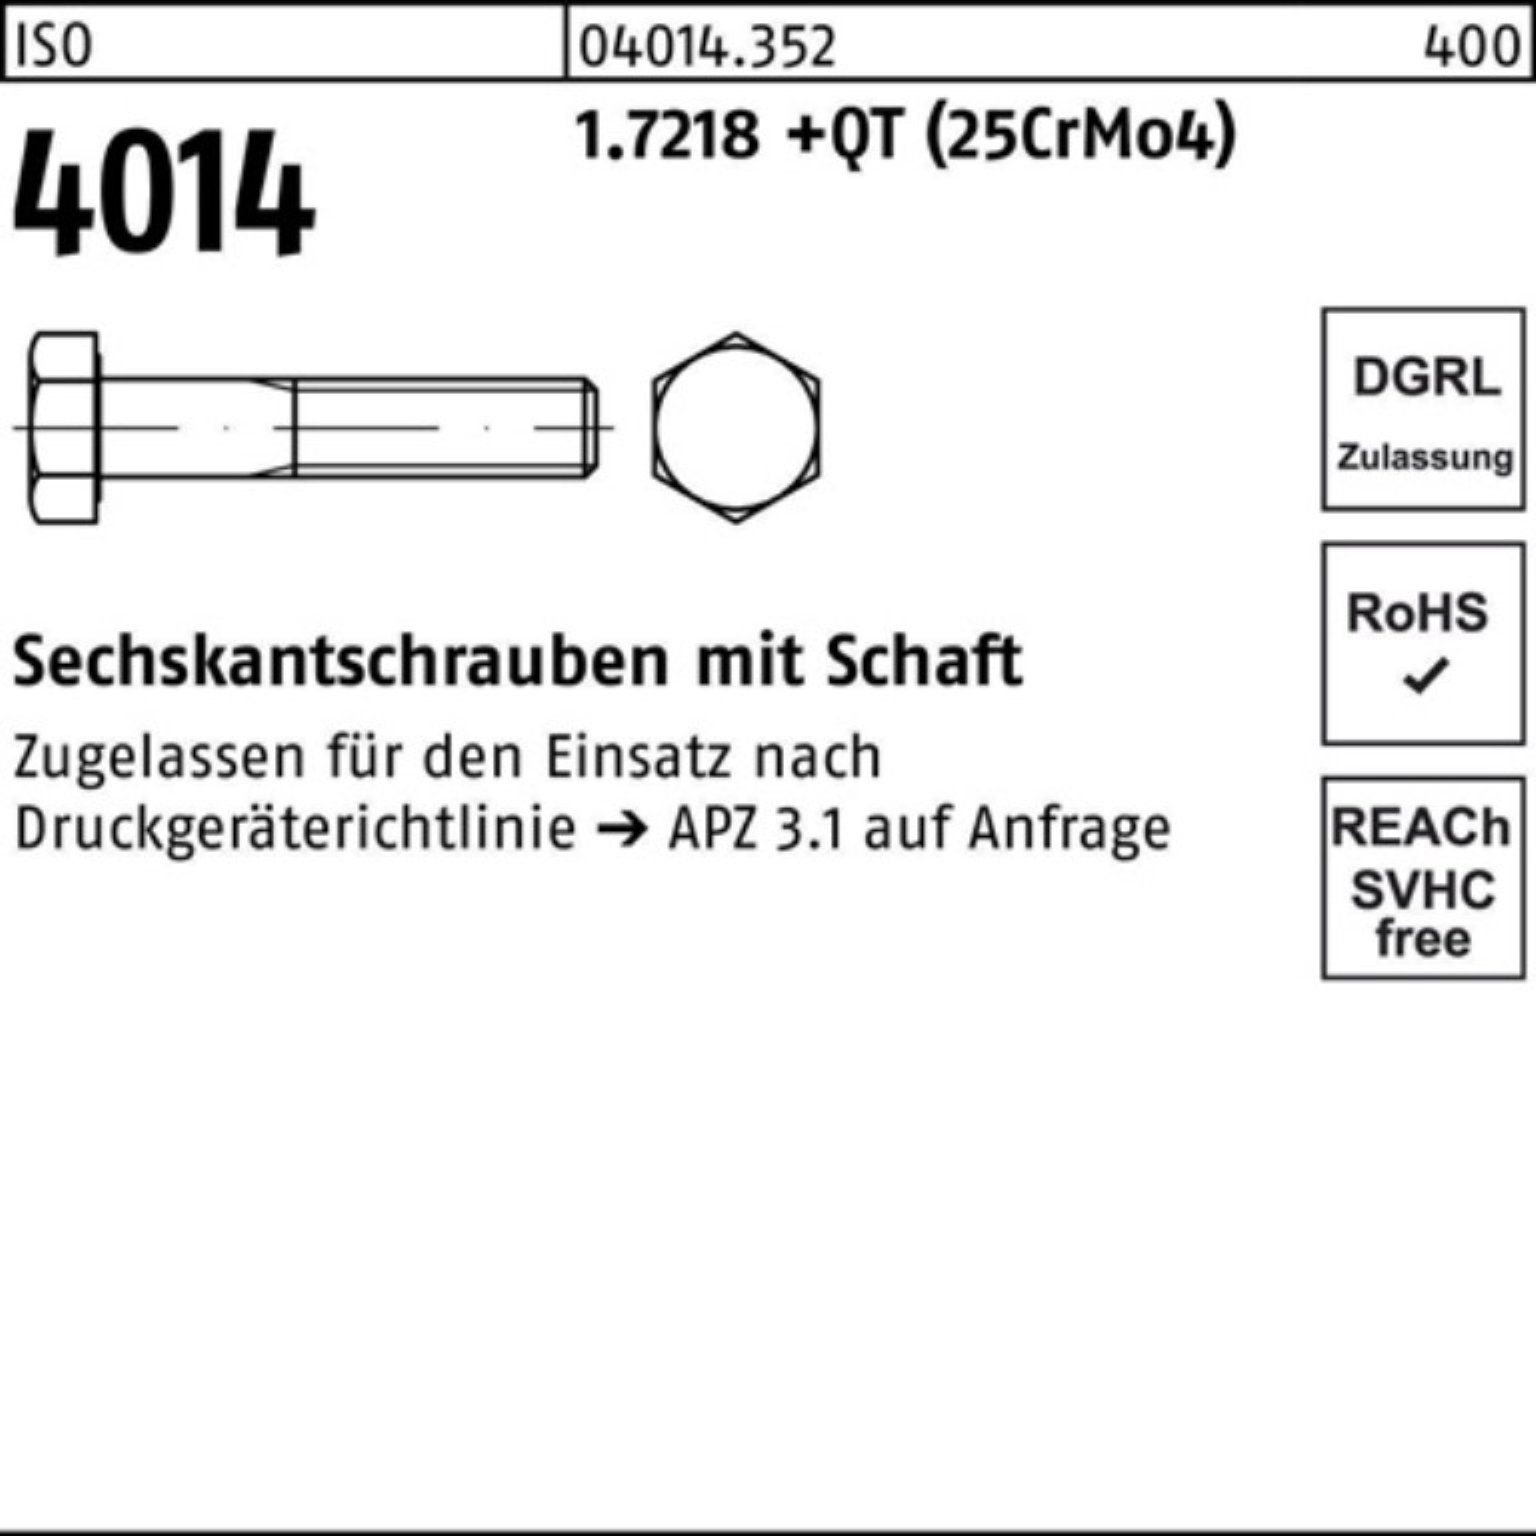 Bufab Sechskantschraube 100er Pack (25Cr ISO 250 +QT M30x Schaft Sechskantschraube 1.7218 4014